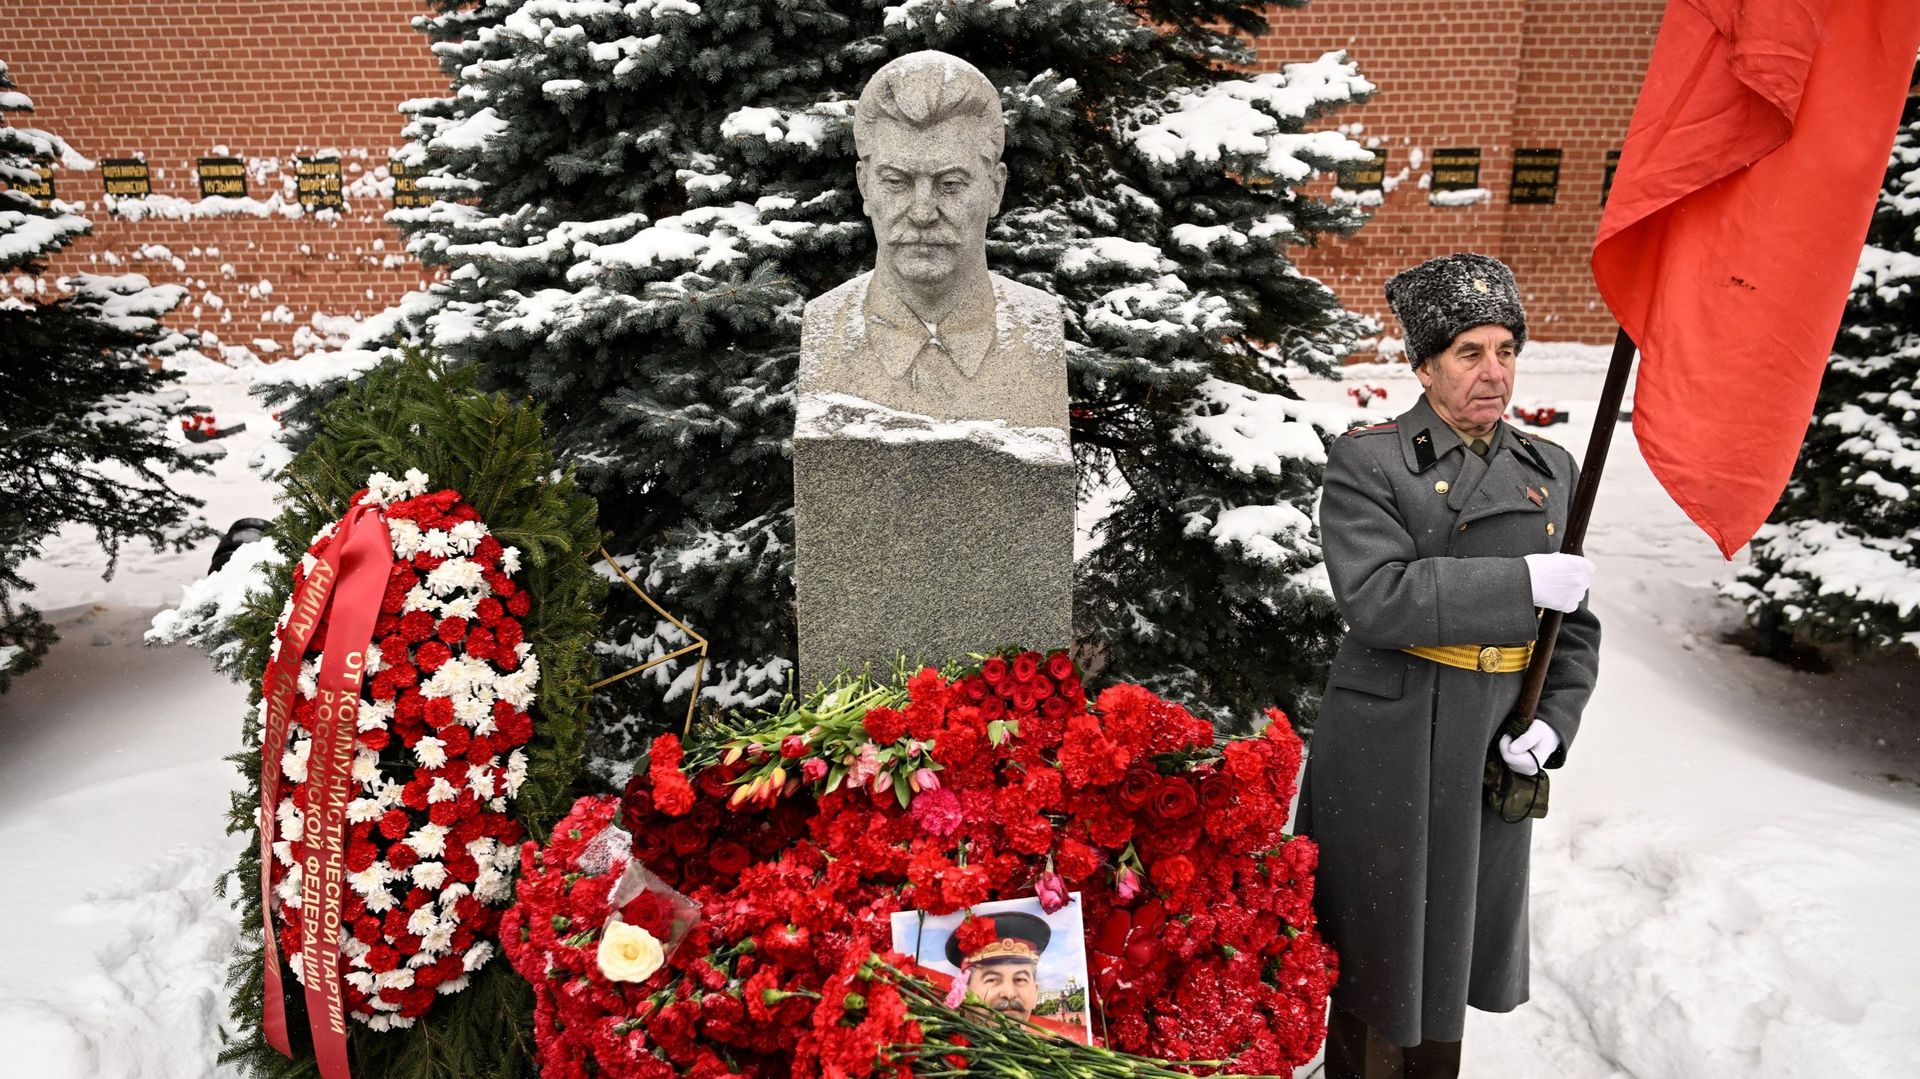 Une photo montre la tombe de l’ancien dirigeant soviétique Joseph Staline lors d’une cérémonie commémorative pour marquer le 70e anniversaire de sa mort sur la Place Rouge à Moscou, le 5 mars 2023.